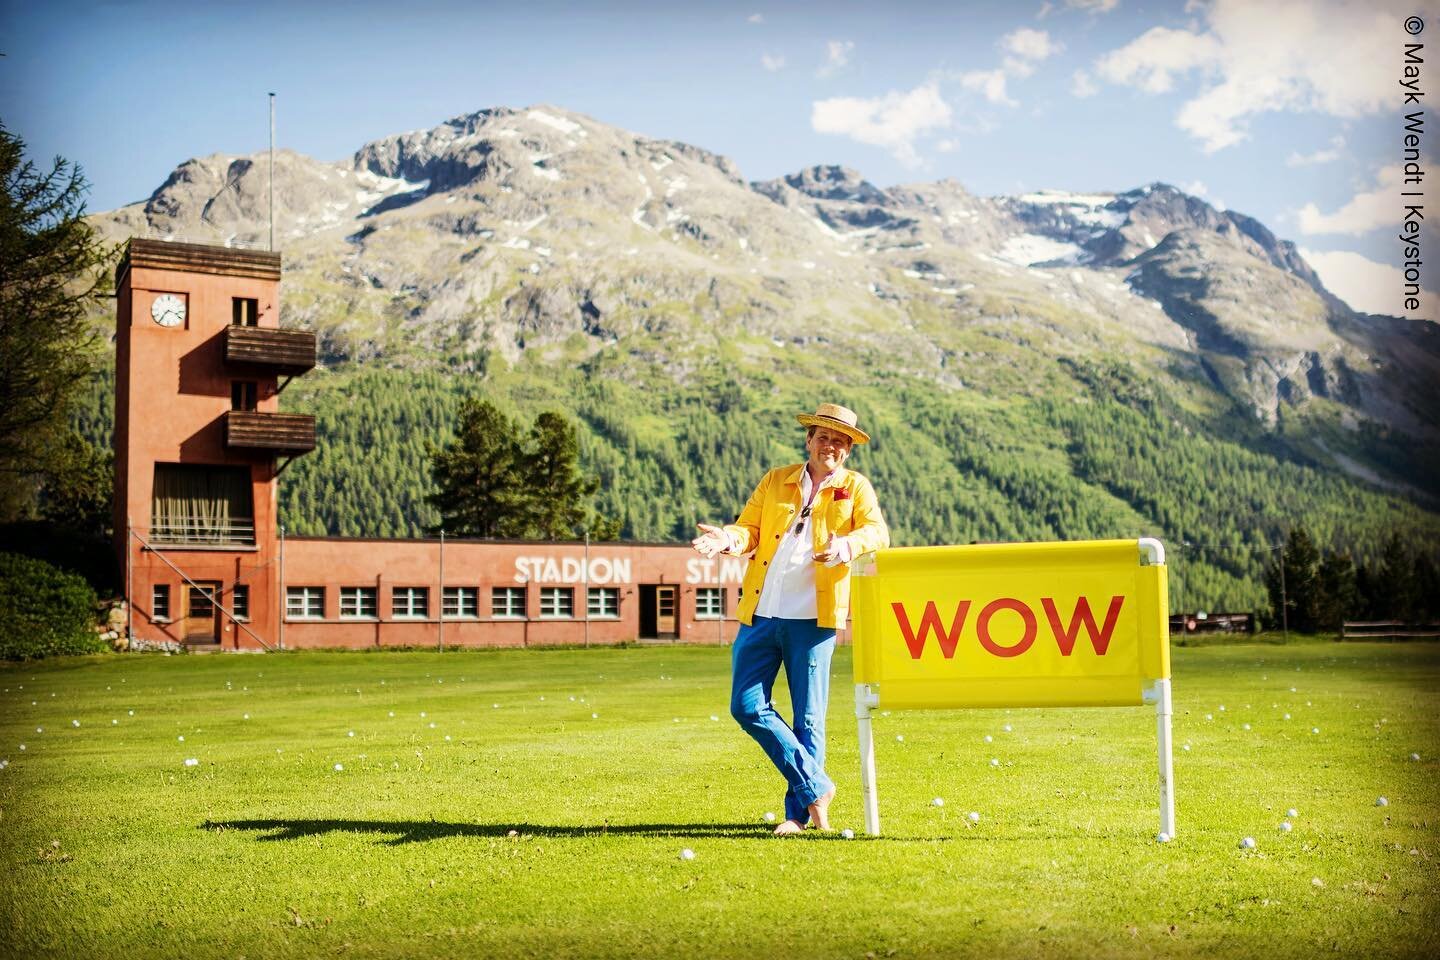 Wow!
St.Moritz hat einen neuen alten Gemeindepr&auml;sidenten. Christian Jott Jenny wurde f&uuml;r weitere vier Jahre gew&auml;hlt. 

Aus Zeitgr&uuml;nden, kam es vor einigen Monaten nicht zu einem Portr&auml;t f&uuml;r das Piz Magazin. 

Vielleicht 